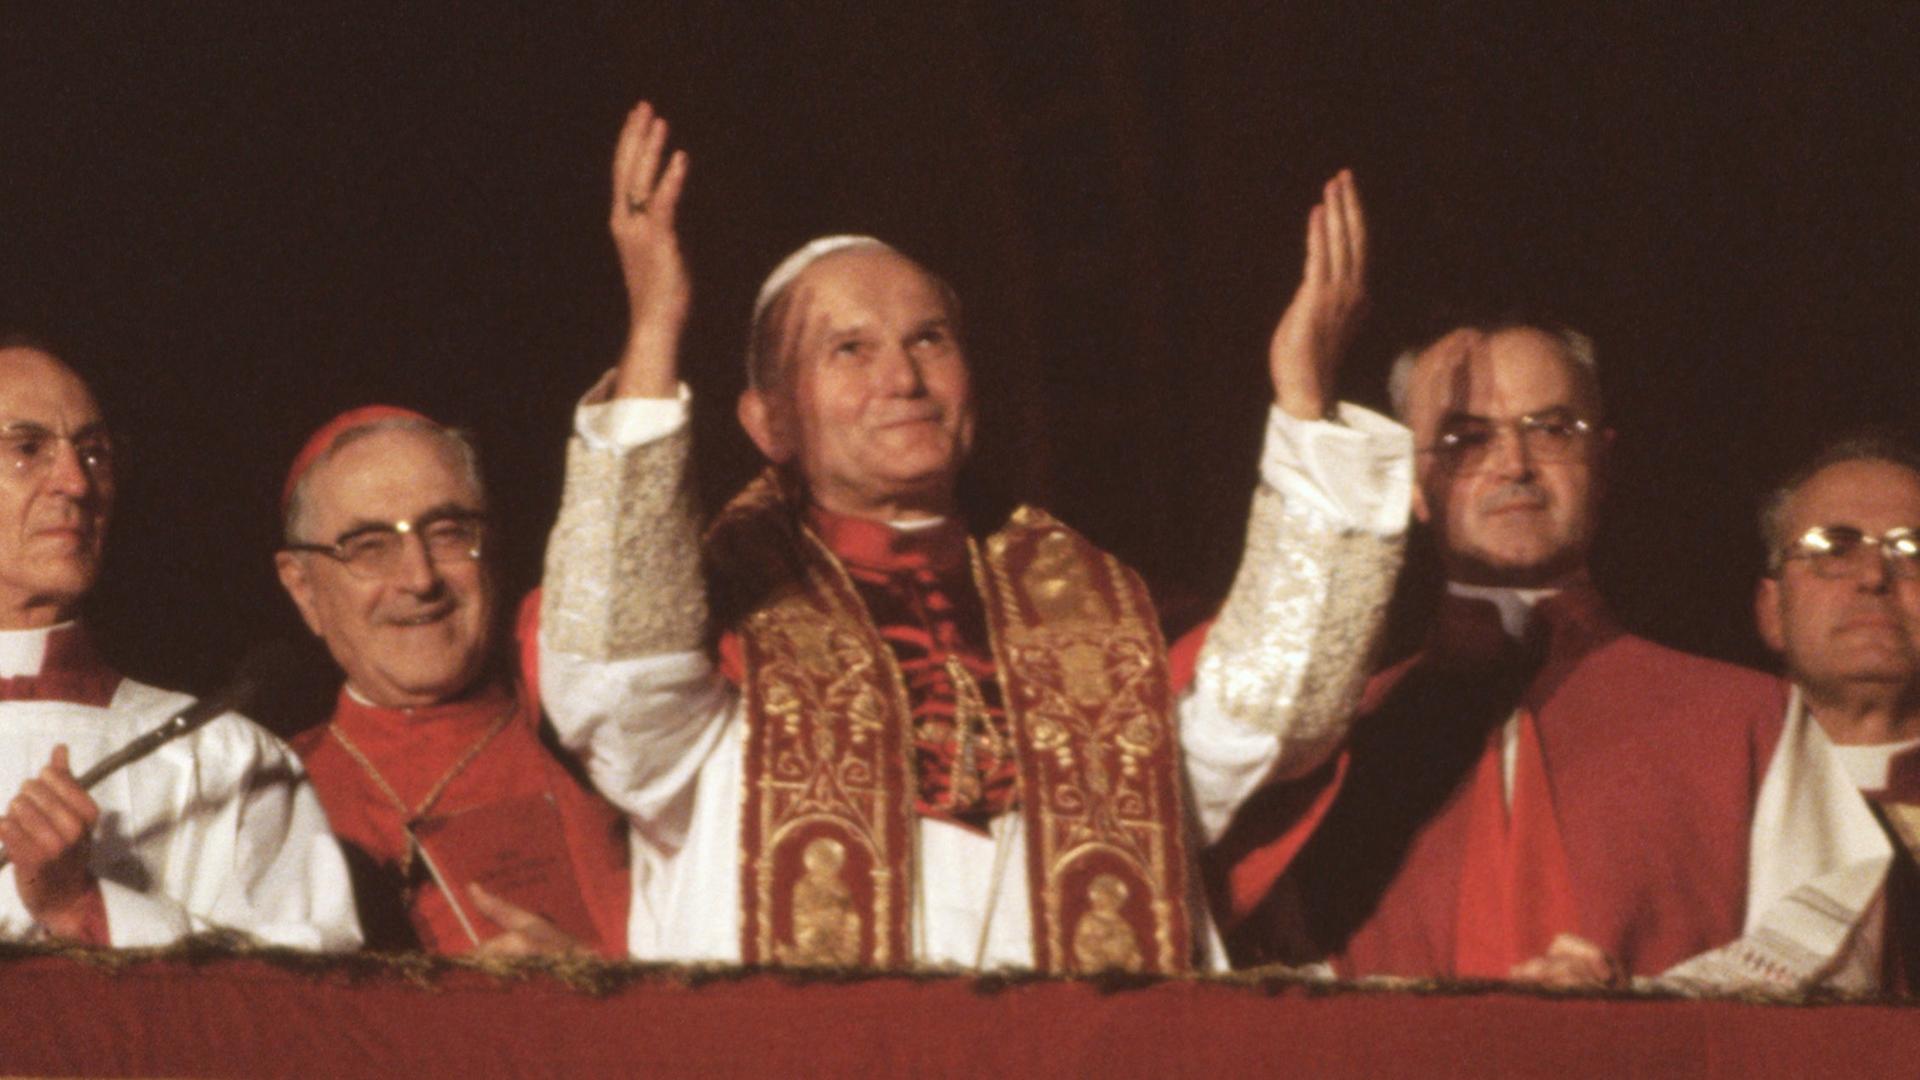 Historische Aufnahme: Papst Johannes Paul II. erscheint zum ersten Mal auf dem Balkon des Petersdoms in der Vatikanstadt am 16. Oktober 1978.